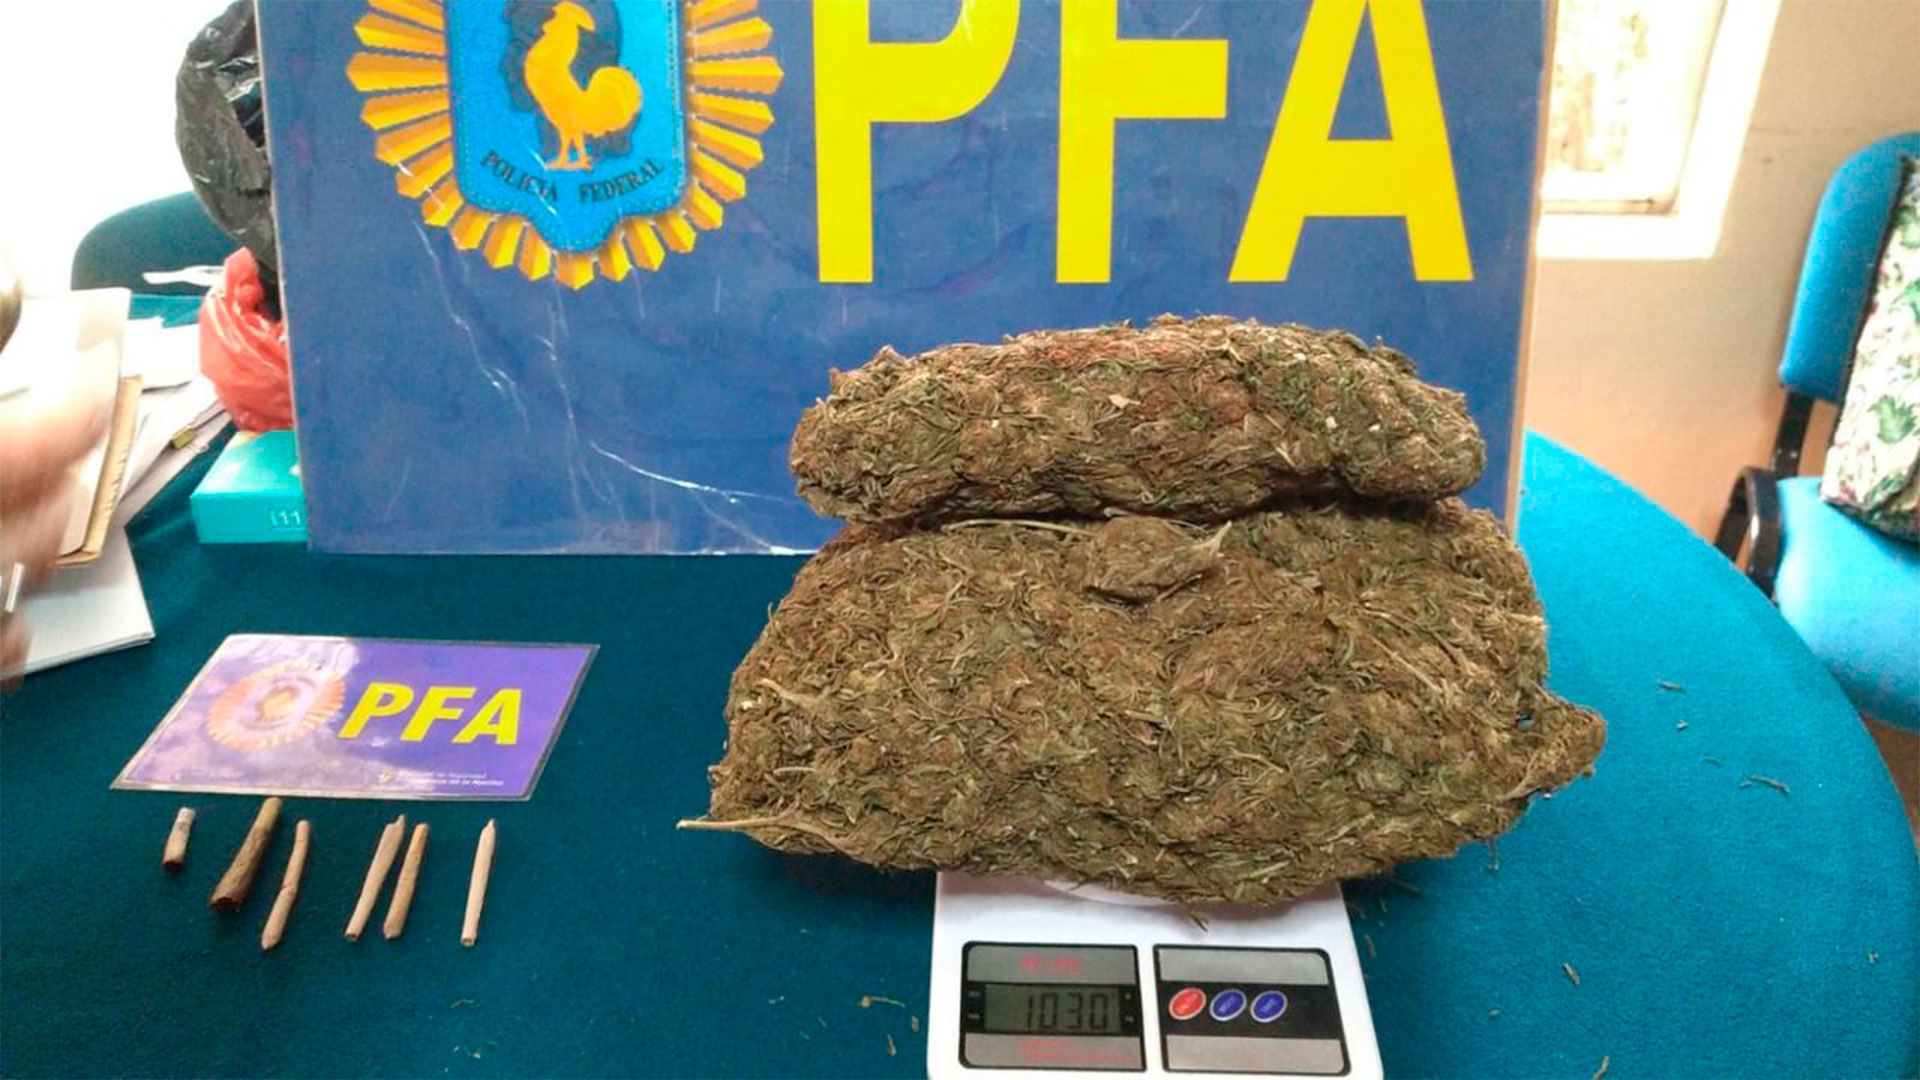 La marihuana secuestrada por la PFA en el colegio 